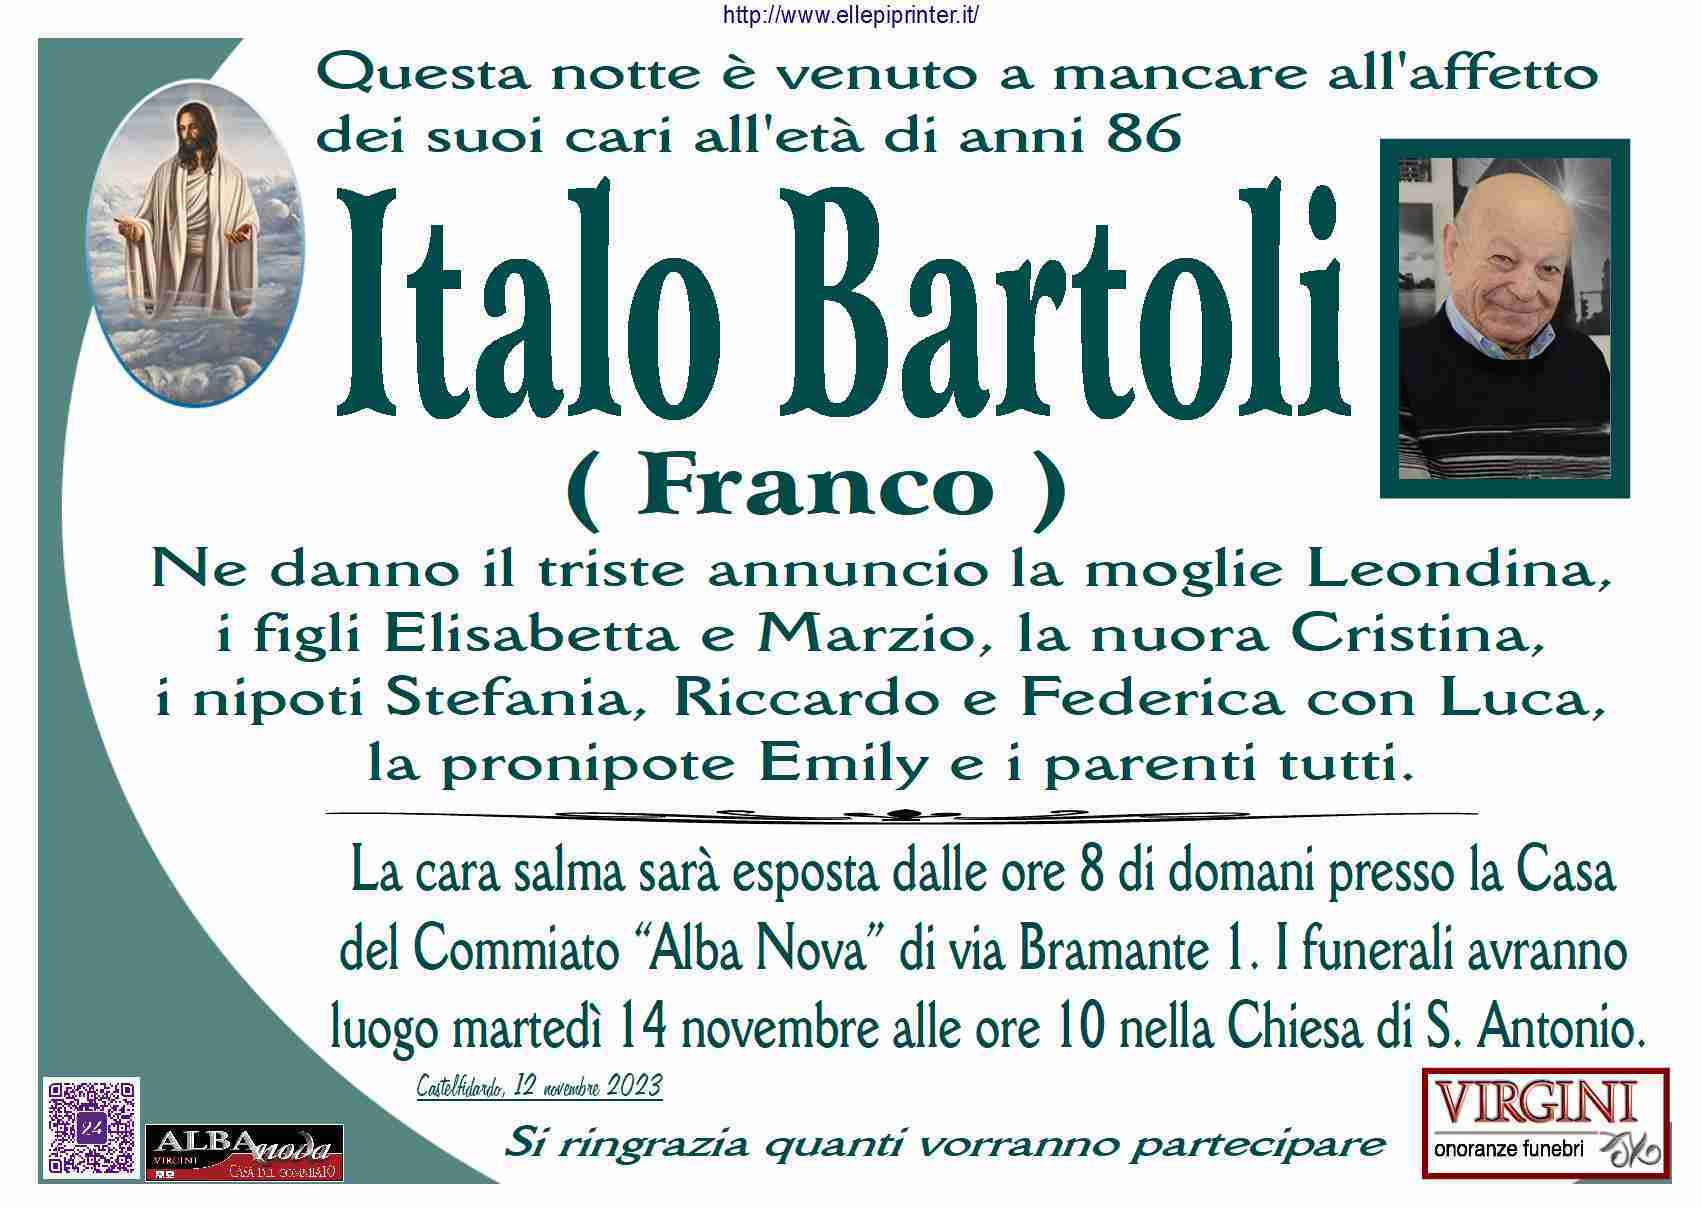 Italo Bartoli